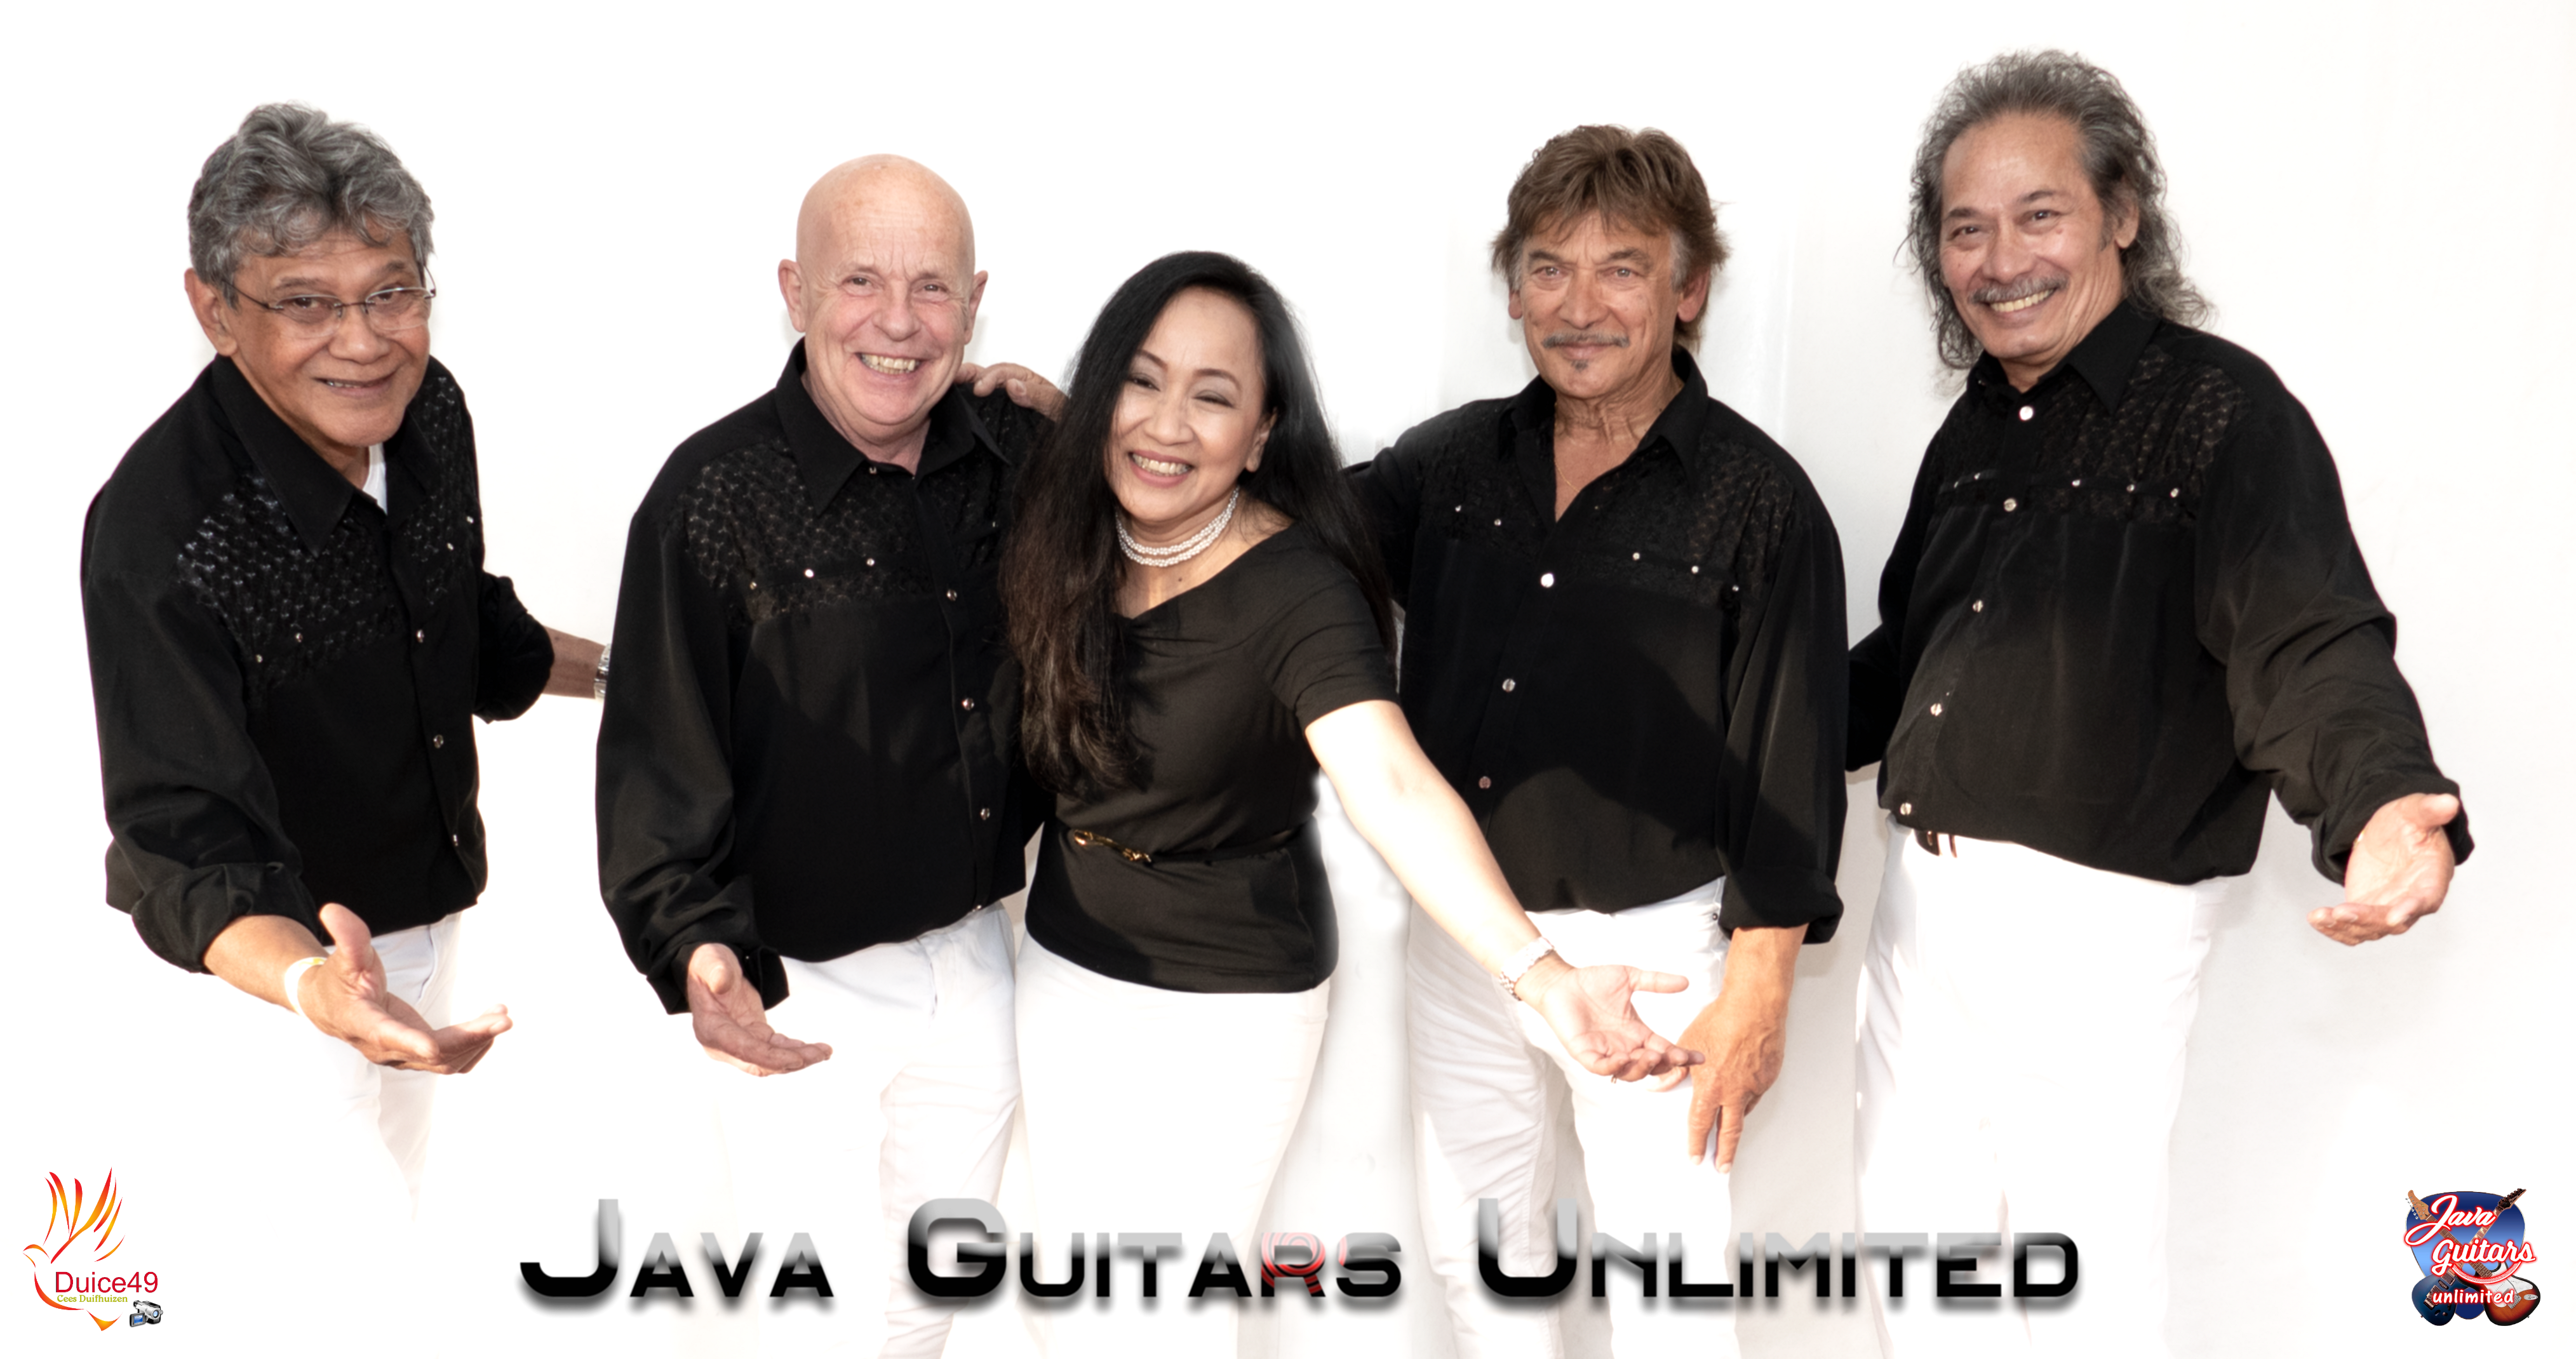 Java Guitars Unlimited 2019 groepsfoto3.png